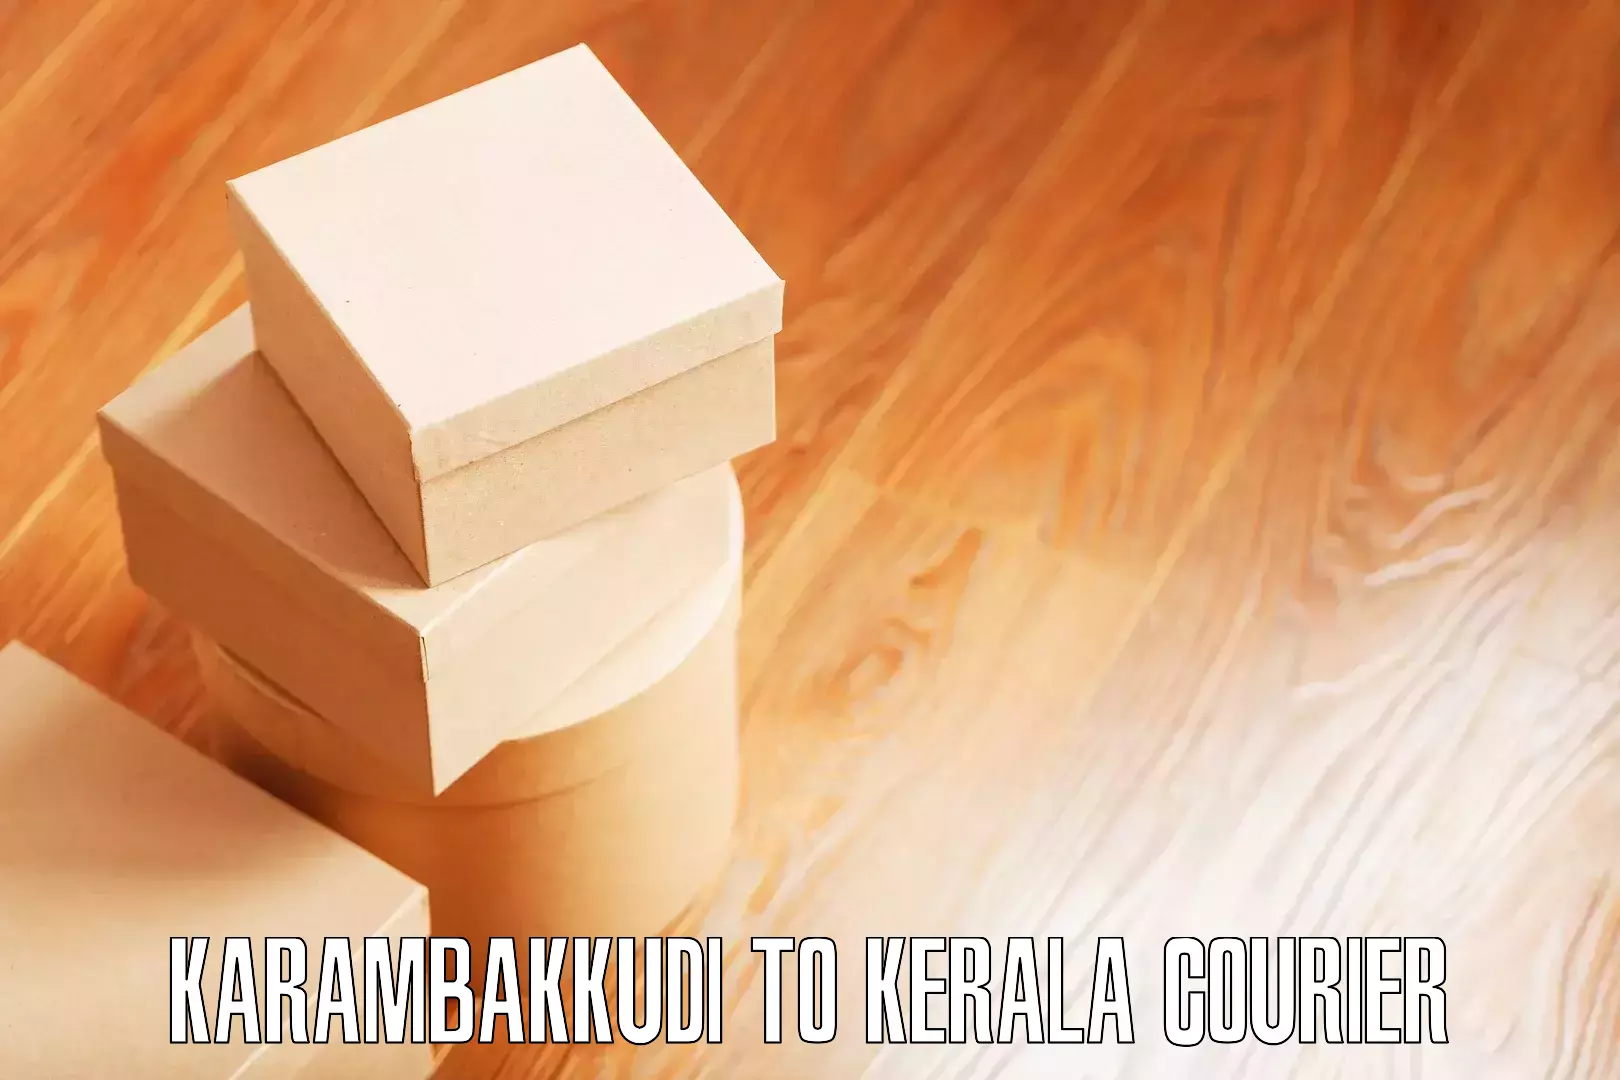 Household transport experts Karambakkudi to Kerala